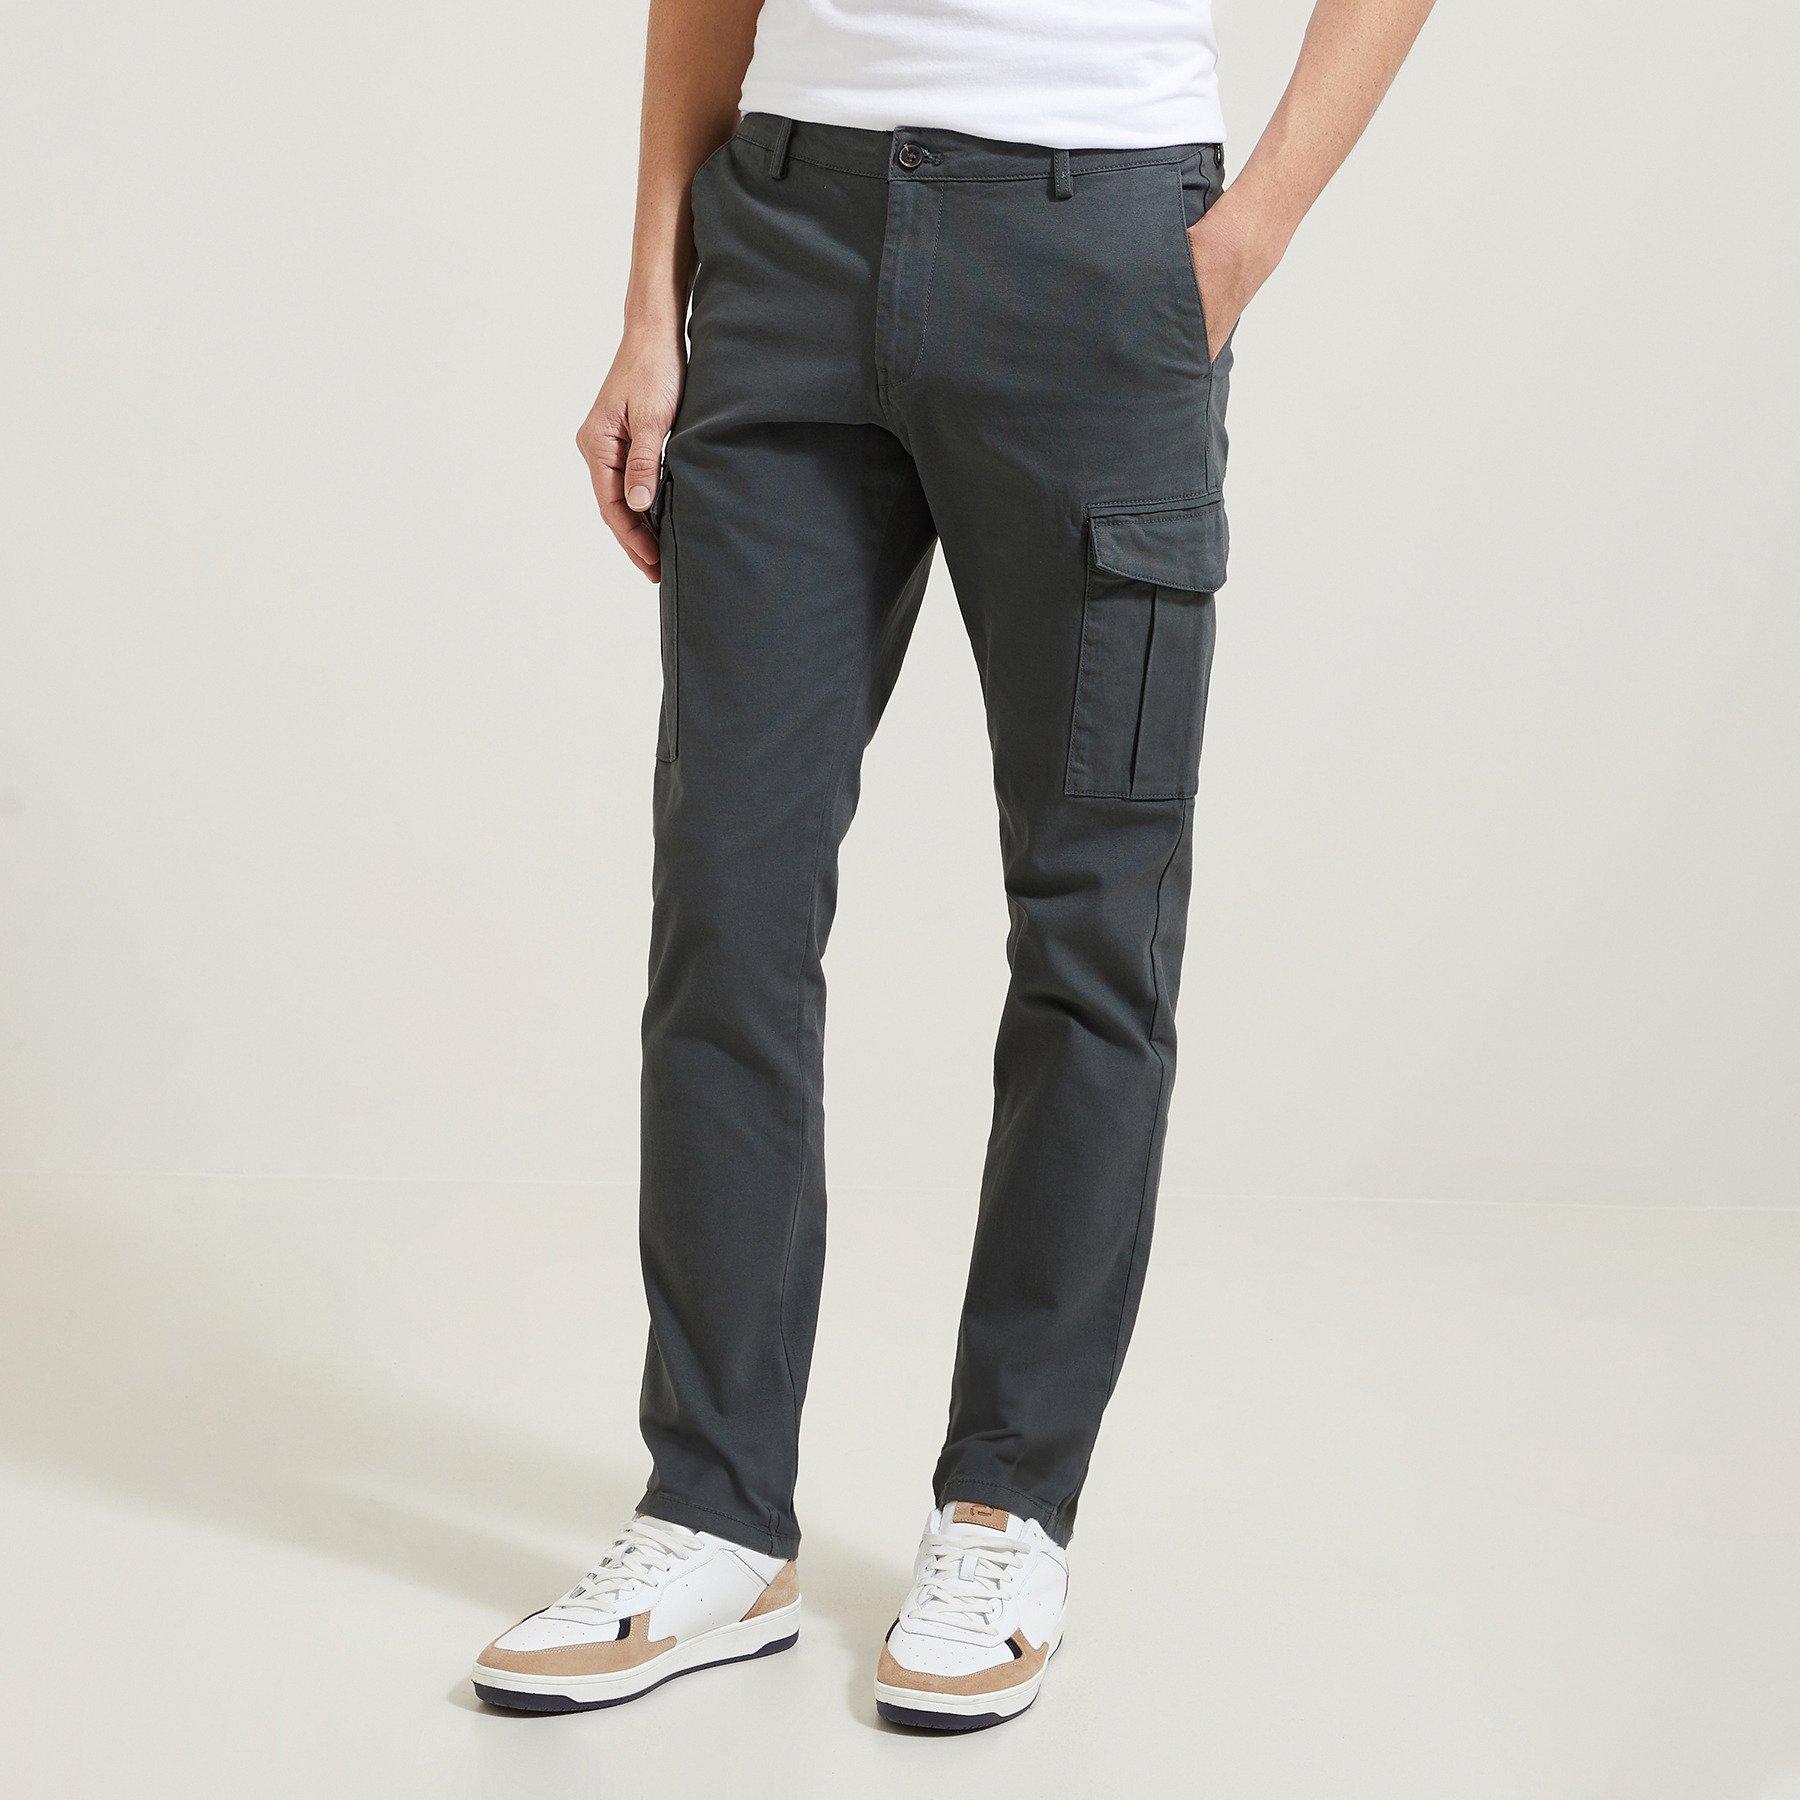 Pantalon cargo droit poches côtés Vert kaki 36 97% Coton, 3% Elasthanne Homme Brice